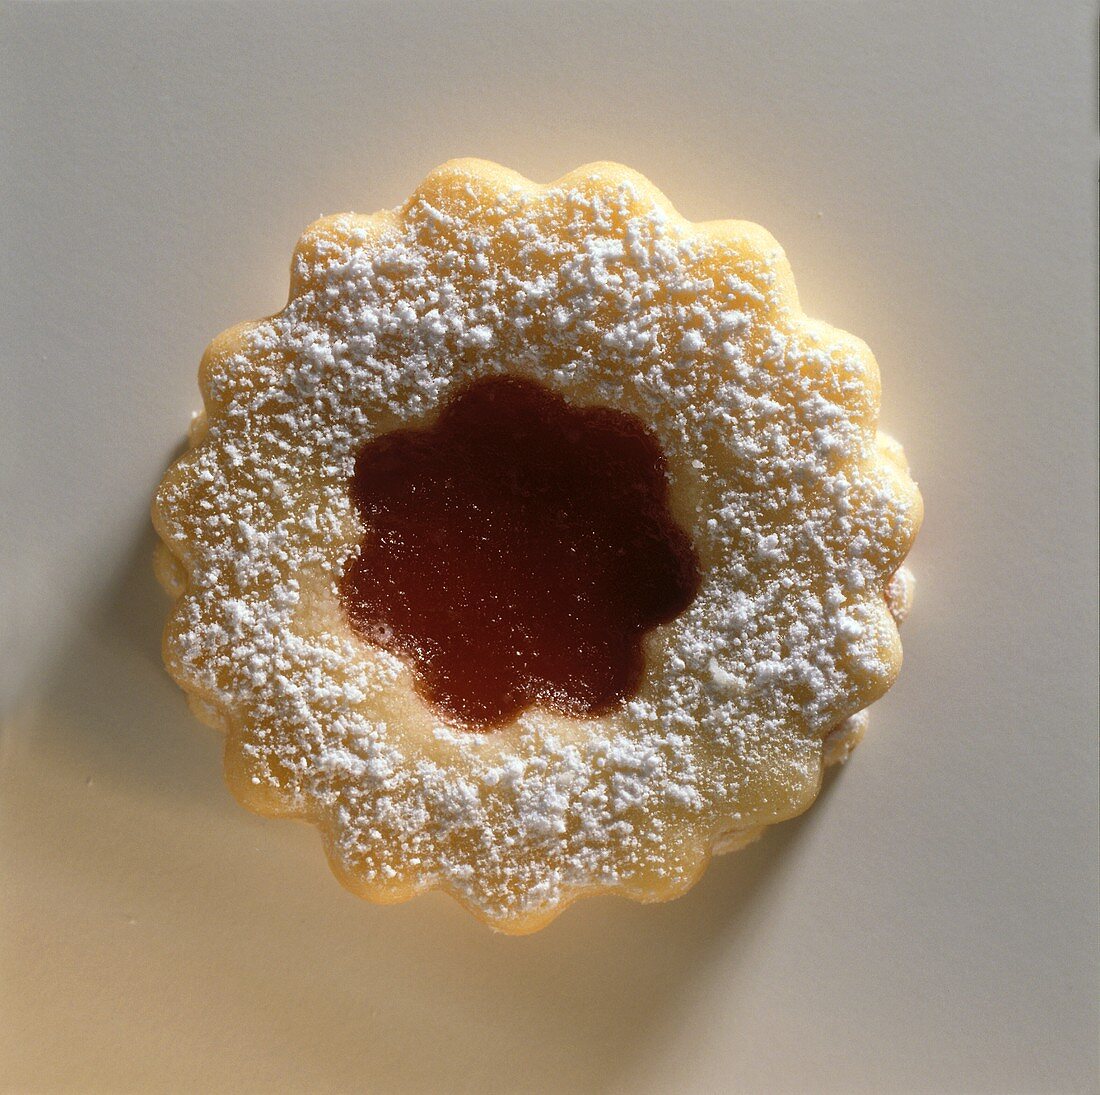 Ein Marmeladenplätzchen vor weißem Hintergrund